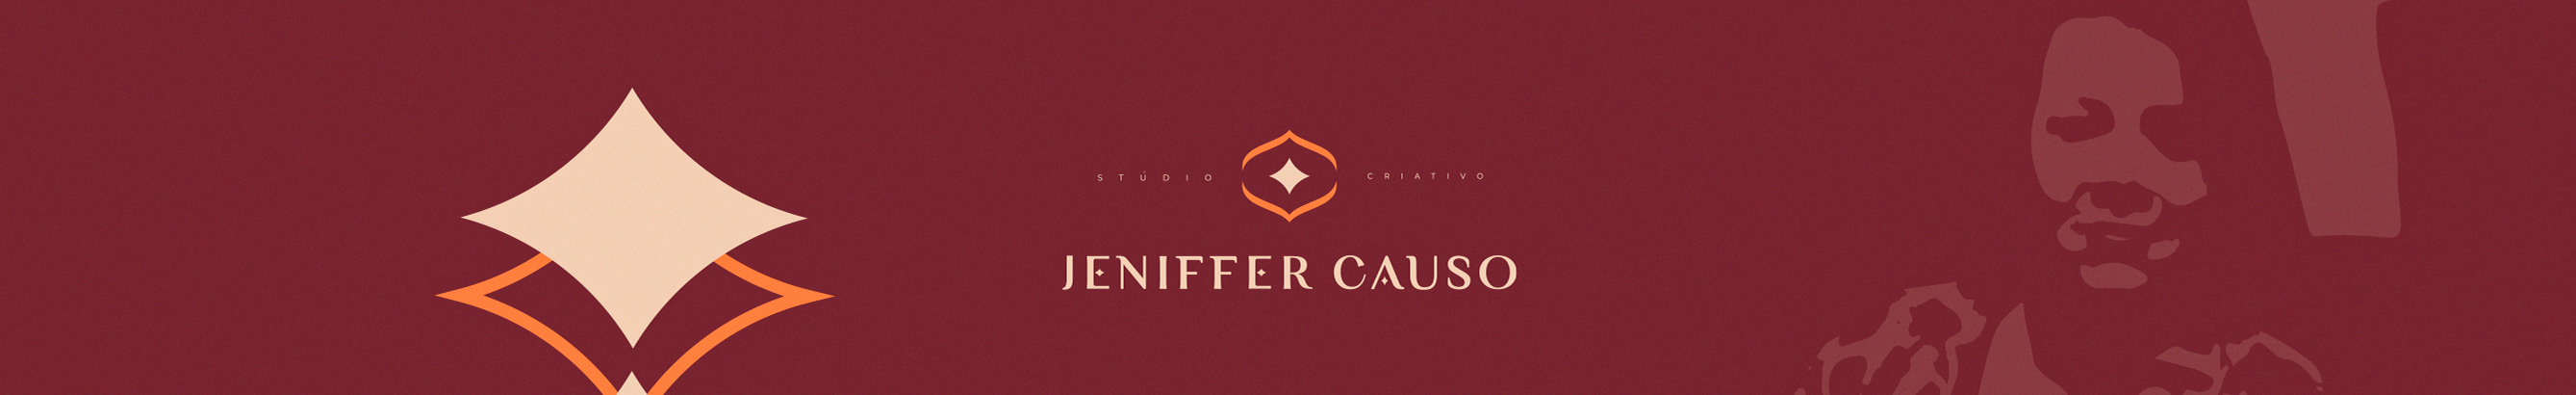 Jeniffer Causo のプロファイルバナー